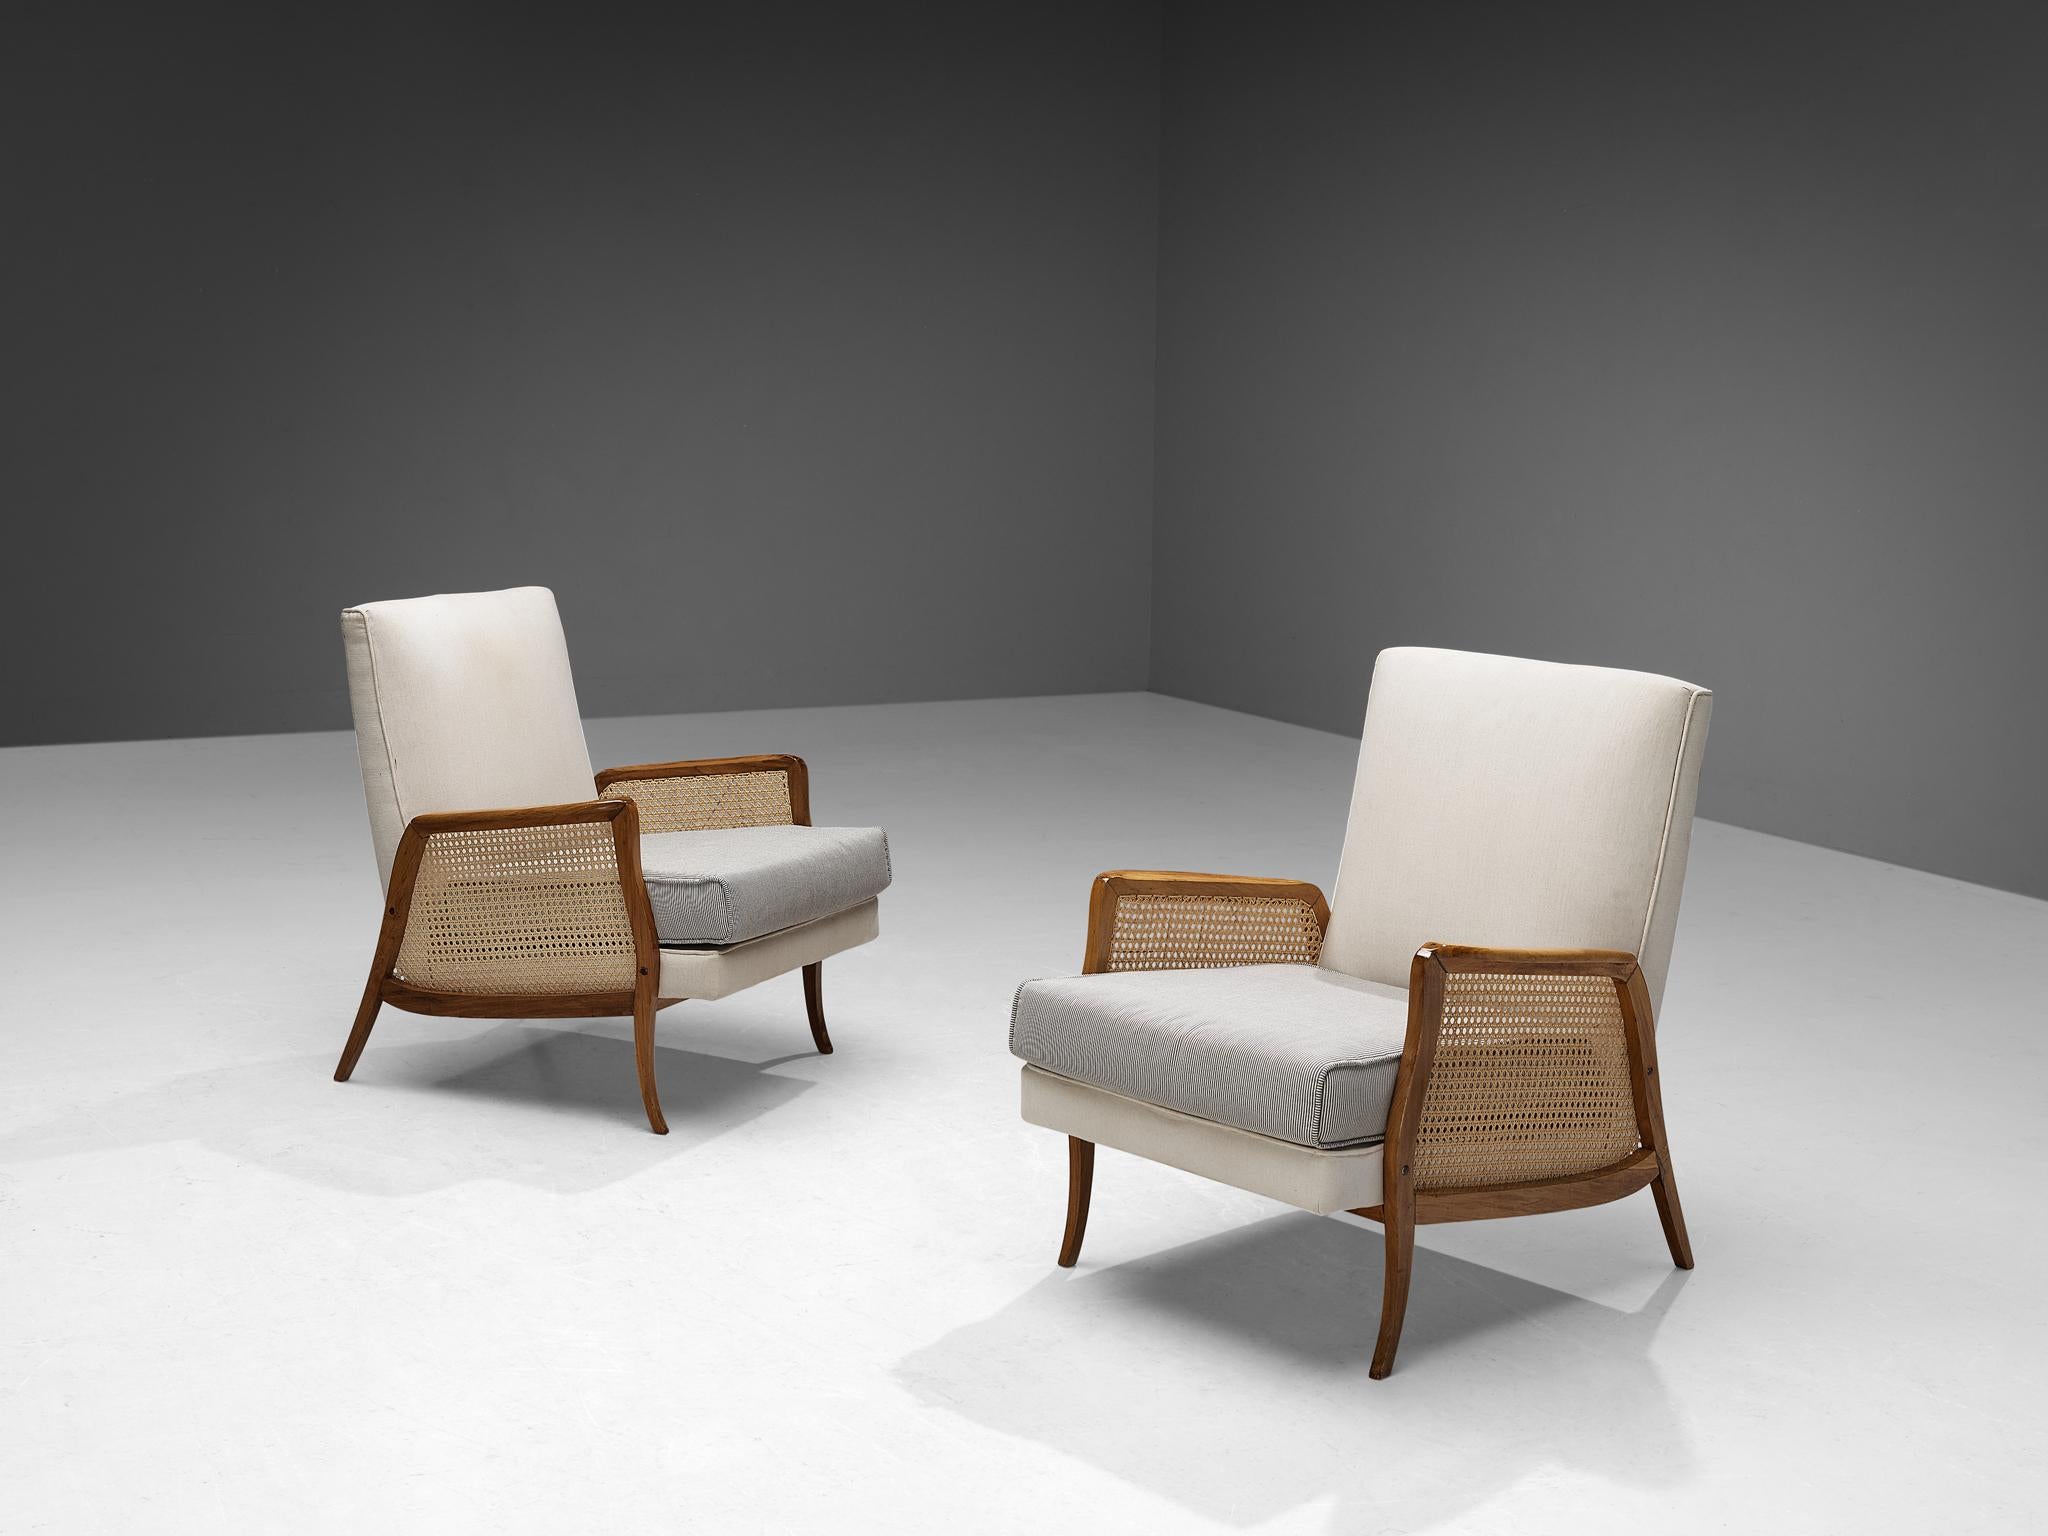 Paire de chaises longues, noyer, tissu, canne, Brésil, années 1950.

Le style de ces fauteuils brésiliens est simple et discret, où des lignes claires et fluides sont autorisées à émerger dans le design. Le cadre en bois de noyer présente des lignes